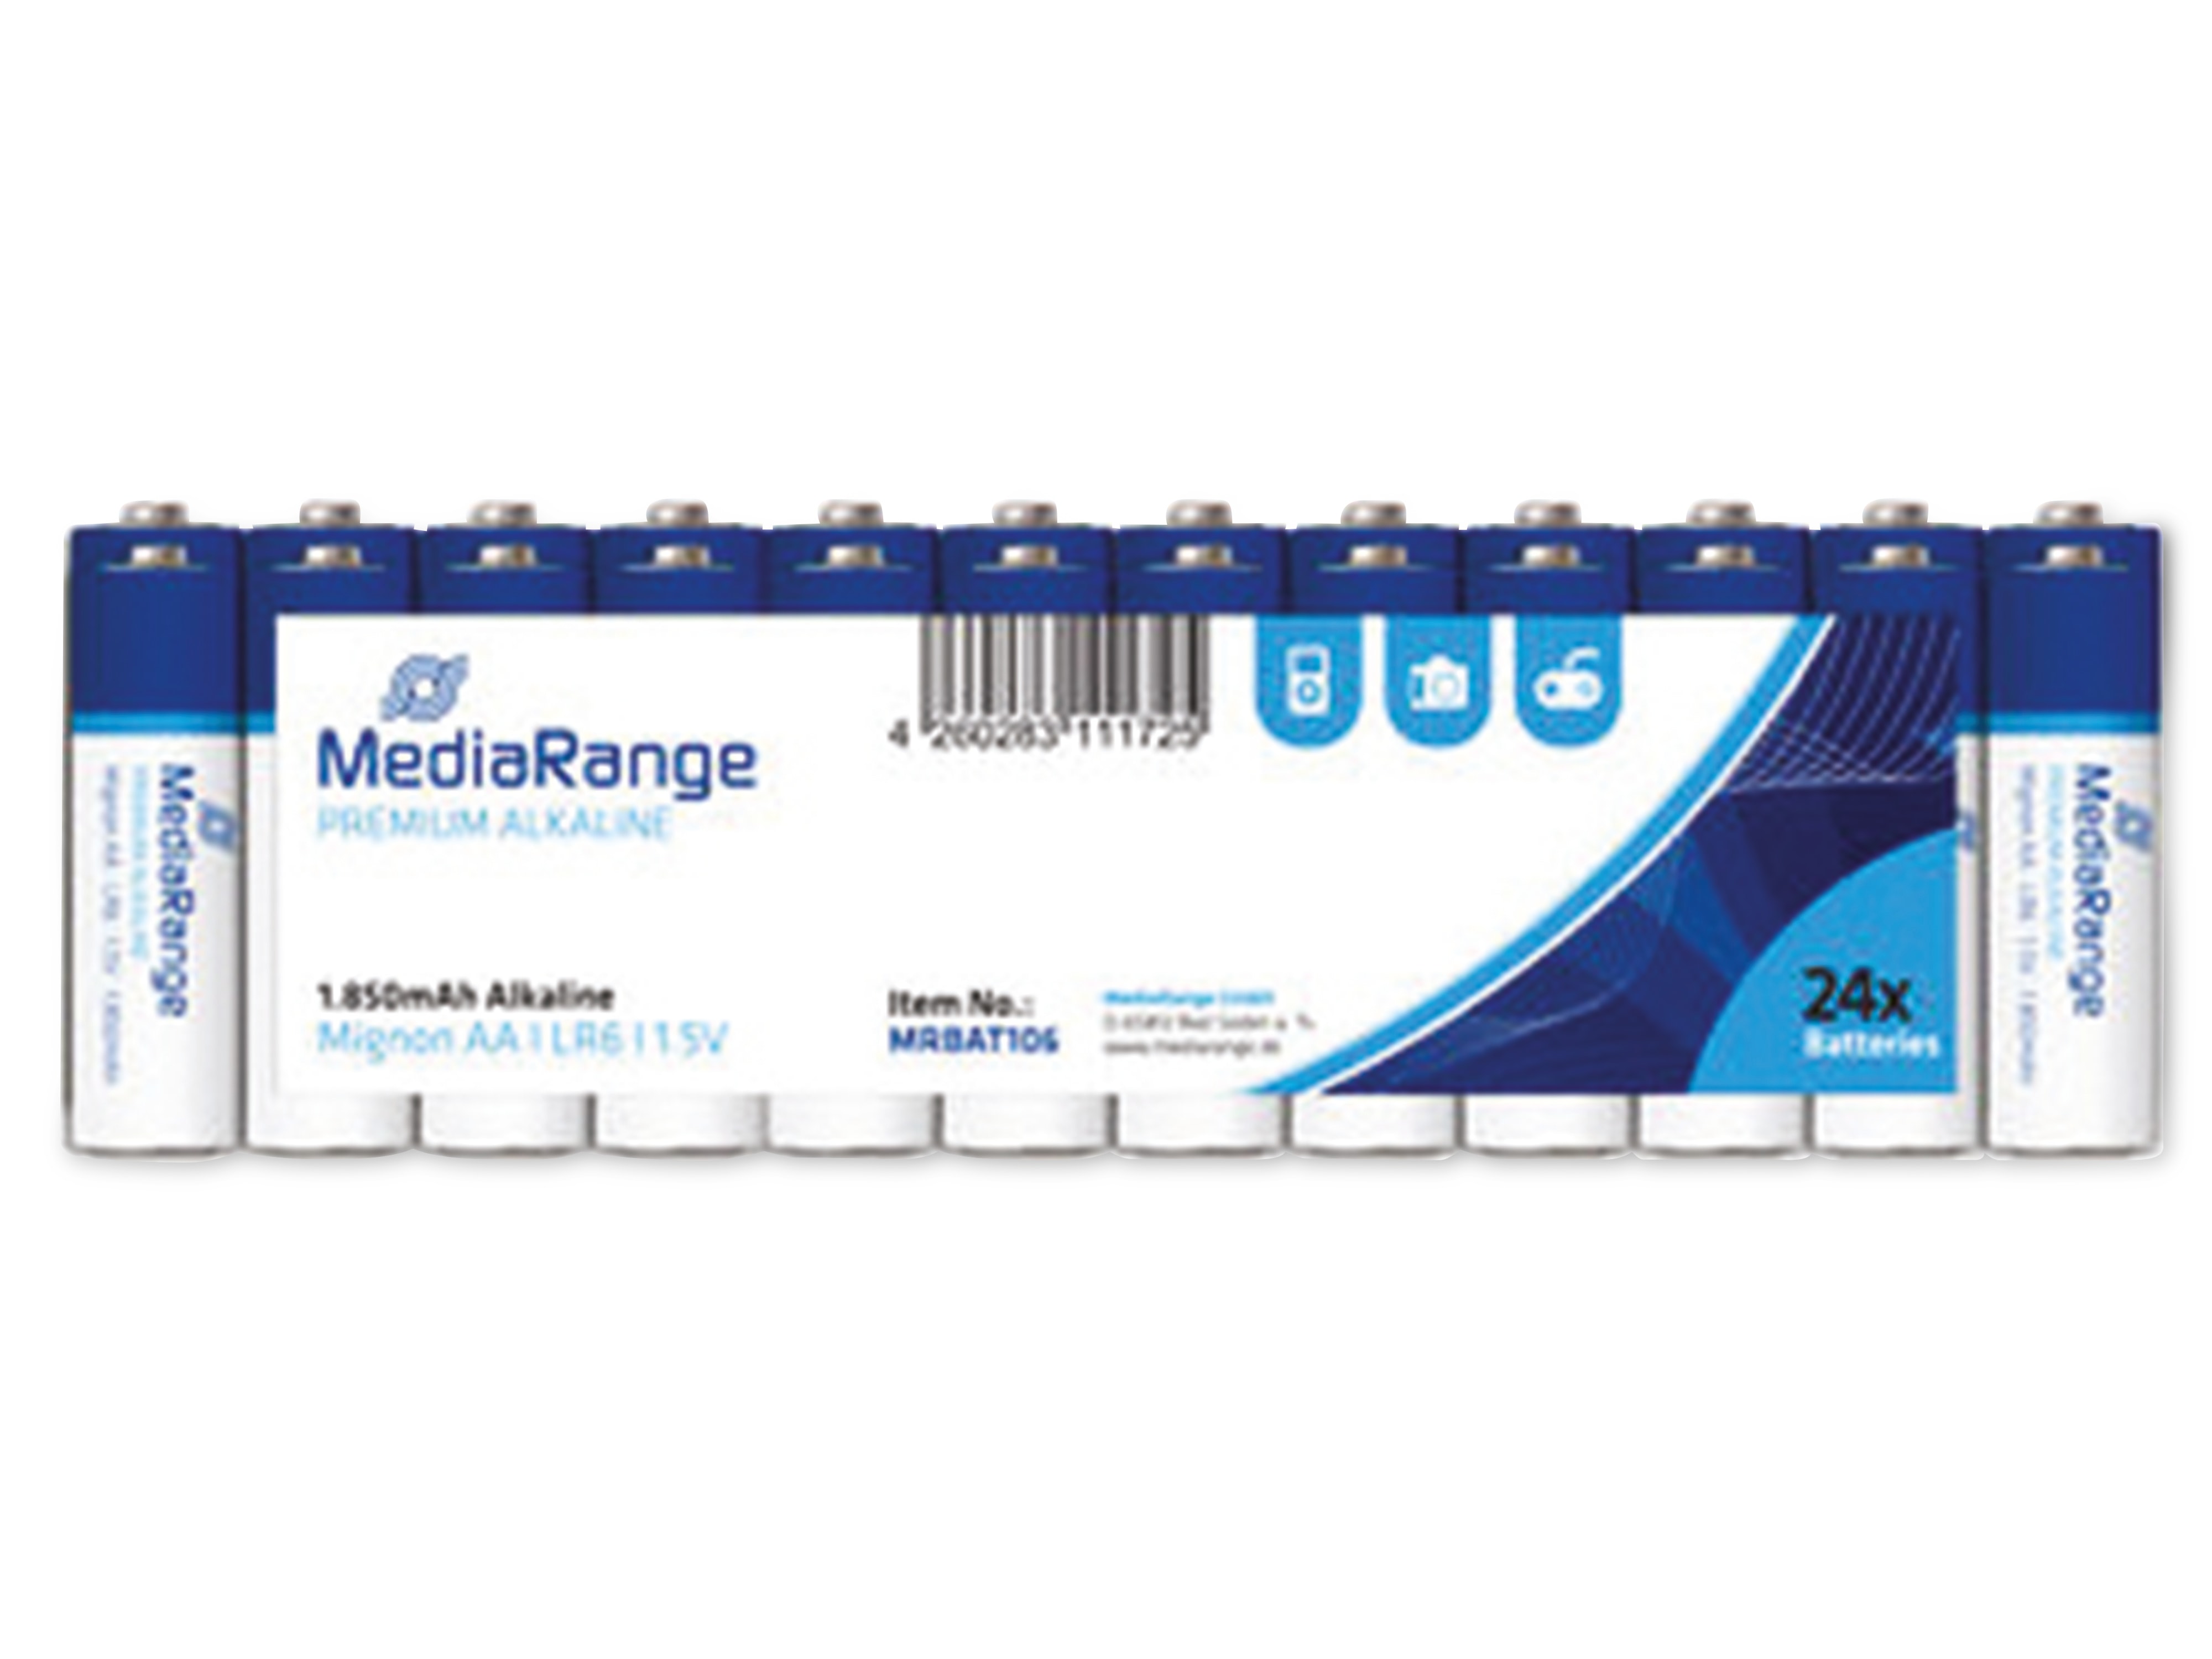 MEDIARANGE Alkaline Batterien MRBAT106, Mignon AA, 24er Pack